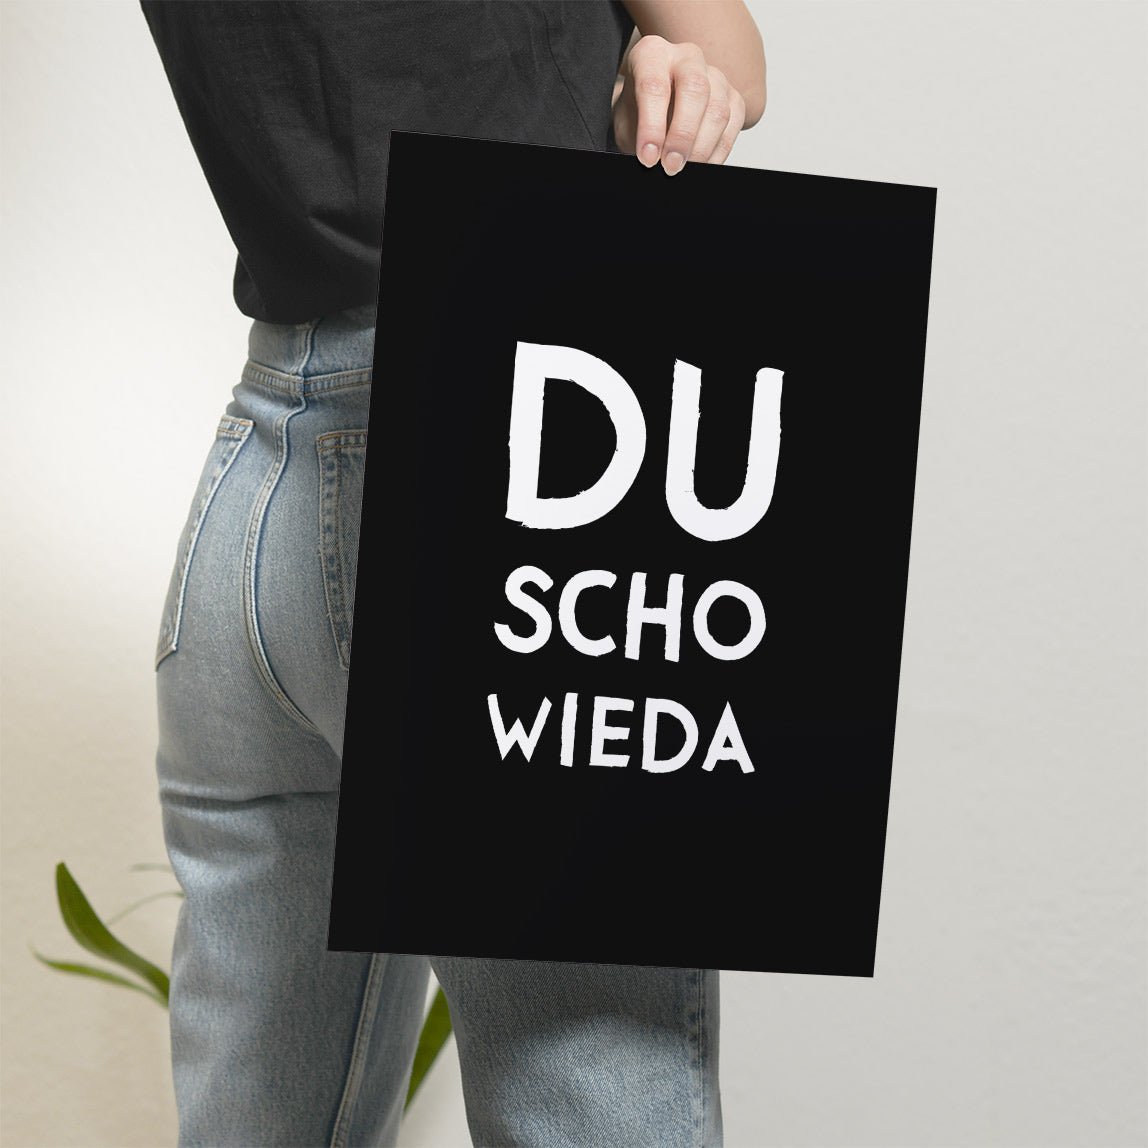 Du scho wieda Poster • bayrisches Poster in schwarz • bayerischer Spruch • lustige Wanddekoration & Deko für Bayern mit Dialekt - vonSUSI